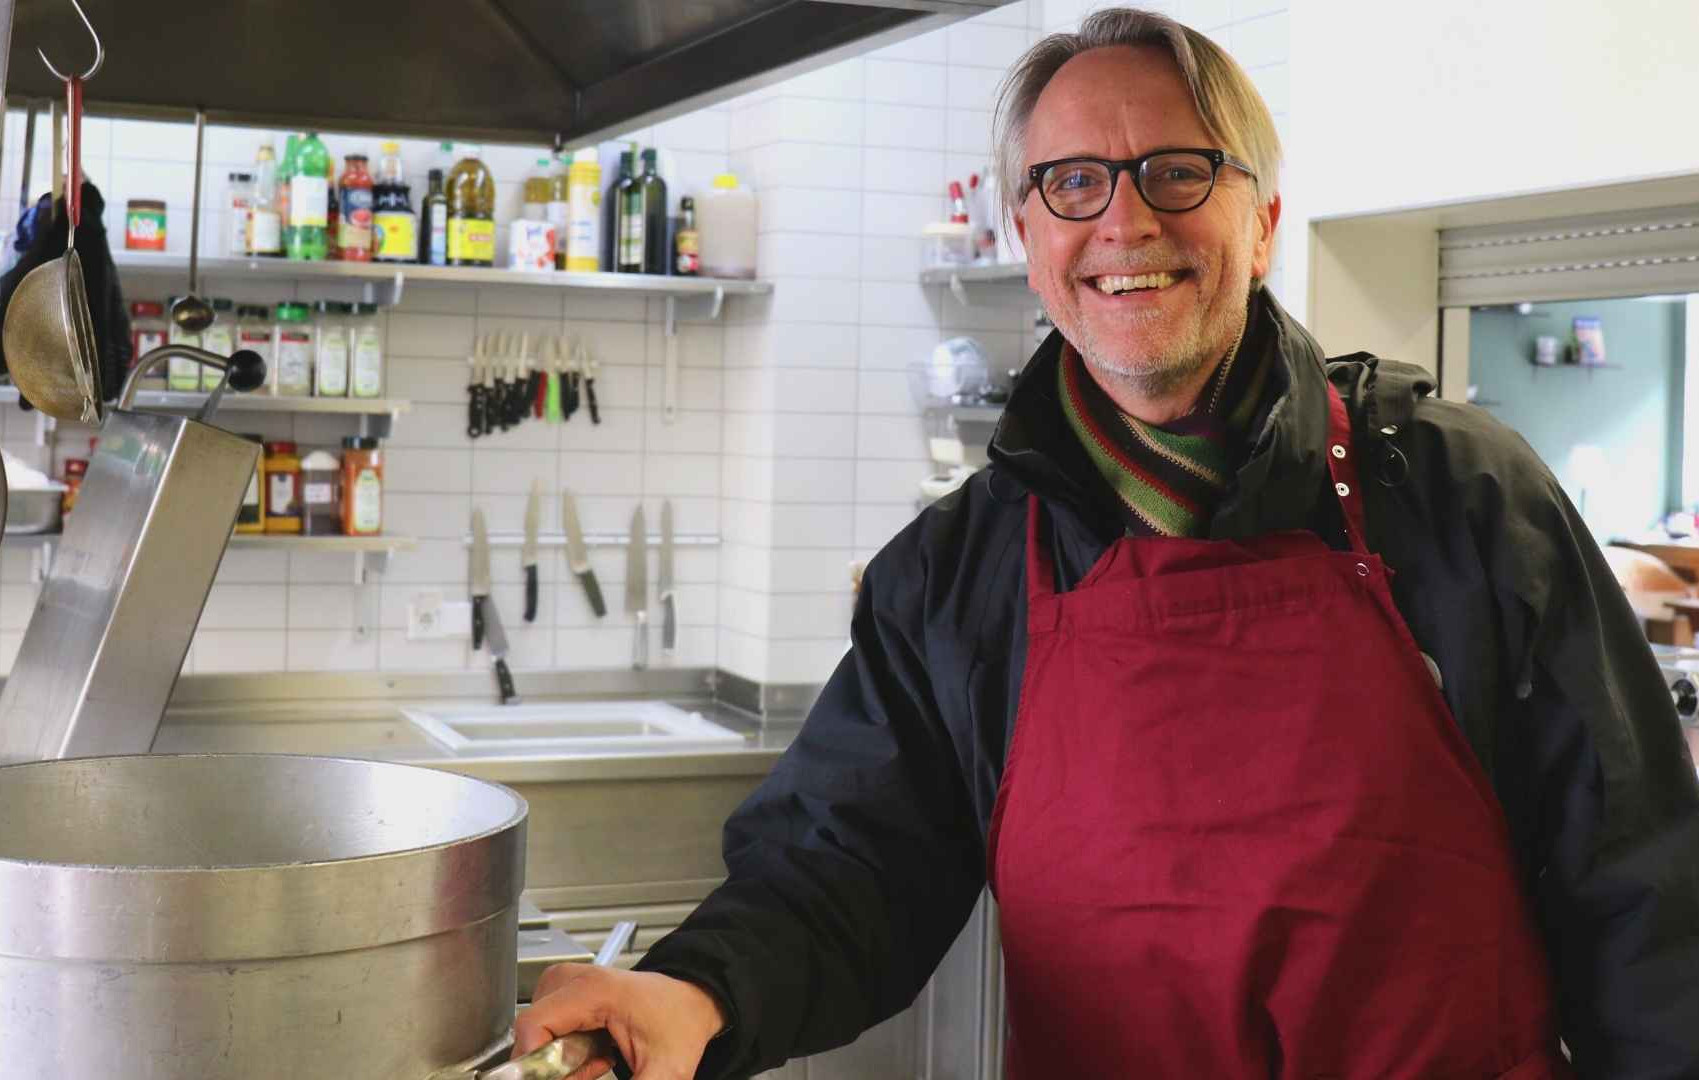 In der Küche der ada_kantine steht Thilo Schwarmann, ein Mitarbeiter, neben einem großen dampfenden Kochtopf. Im Hintergrund sind ein paar Küchenutensilien, unter anderem Messer, aber auch Gewürze.